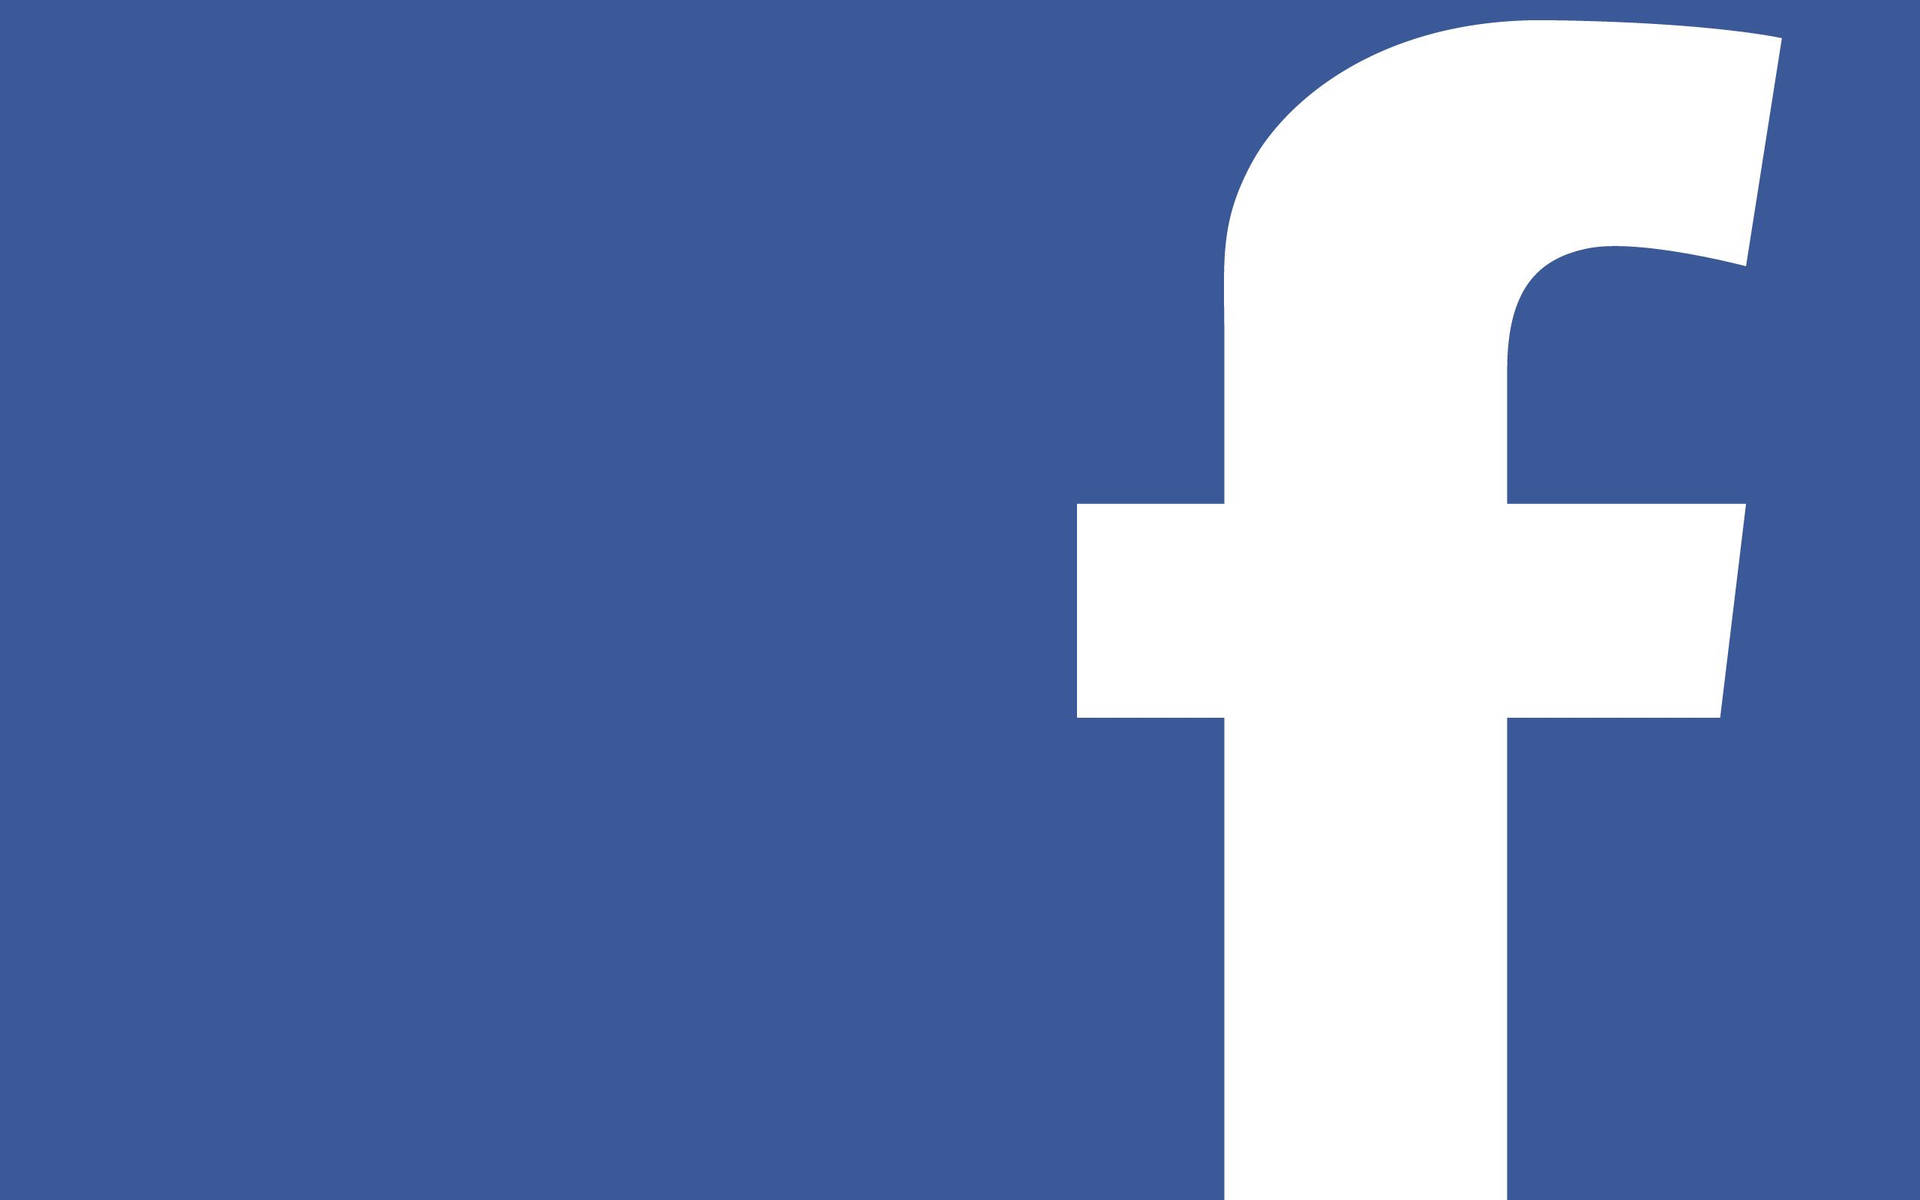 Large F Logo Facebook Desktop Background